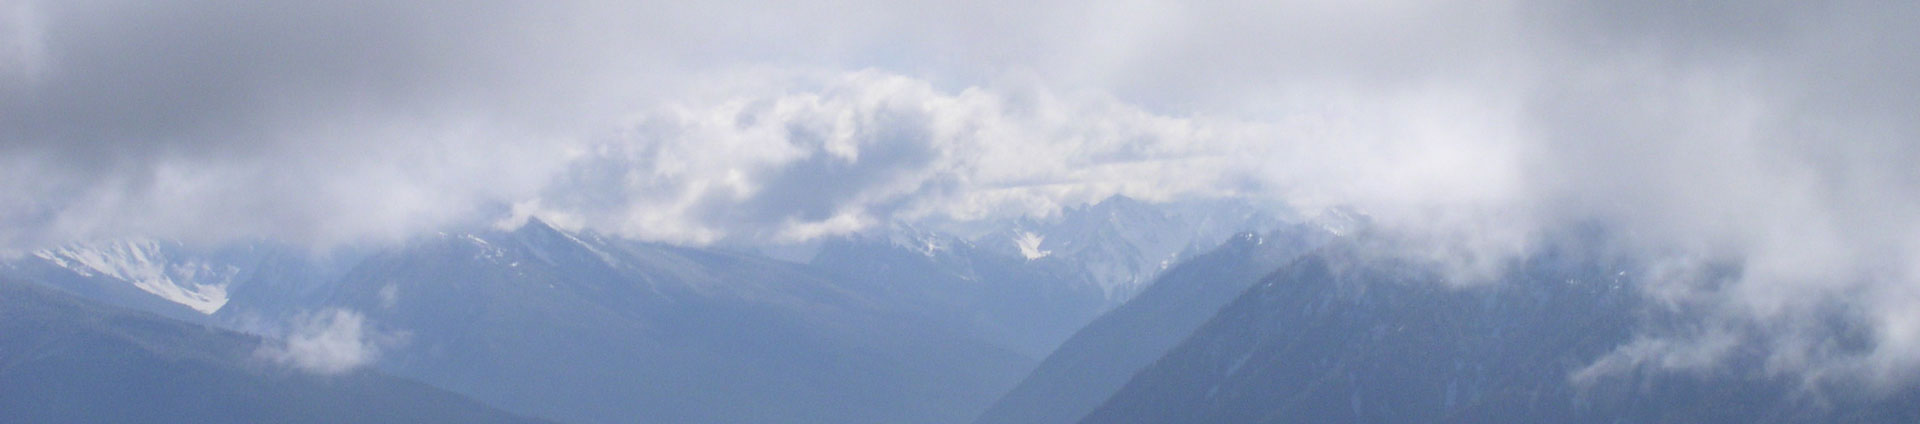 बादलों में ओलंपिक पहाड़ों की हेडर छवि